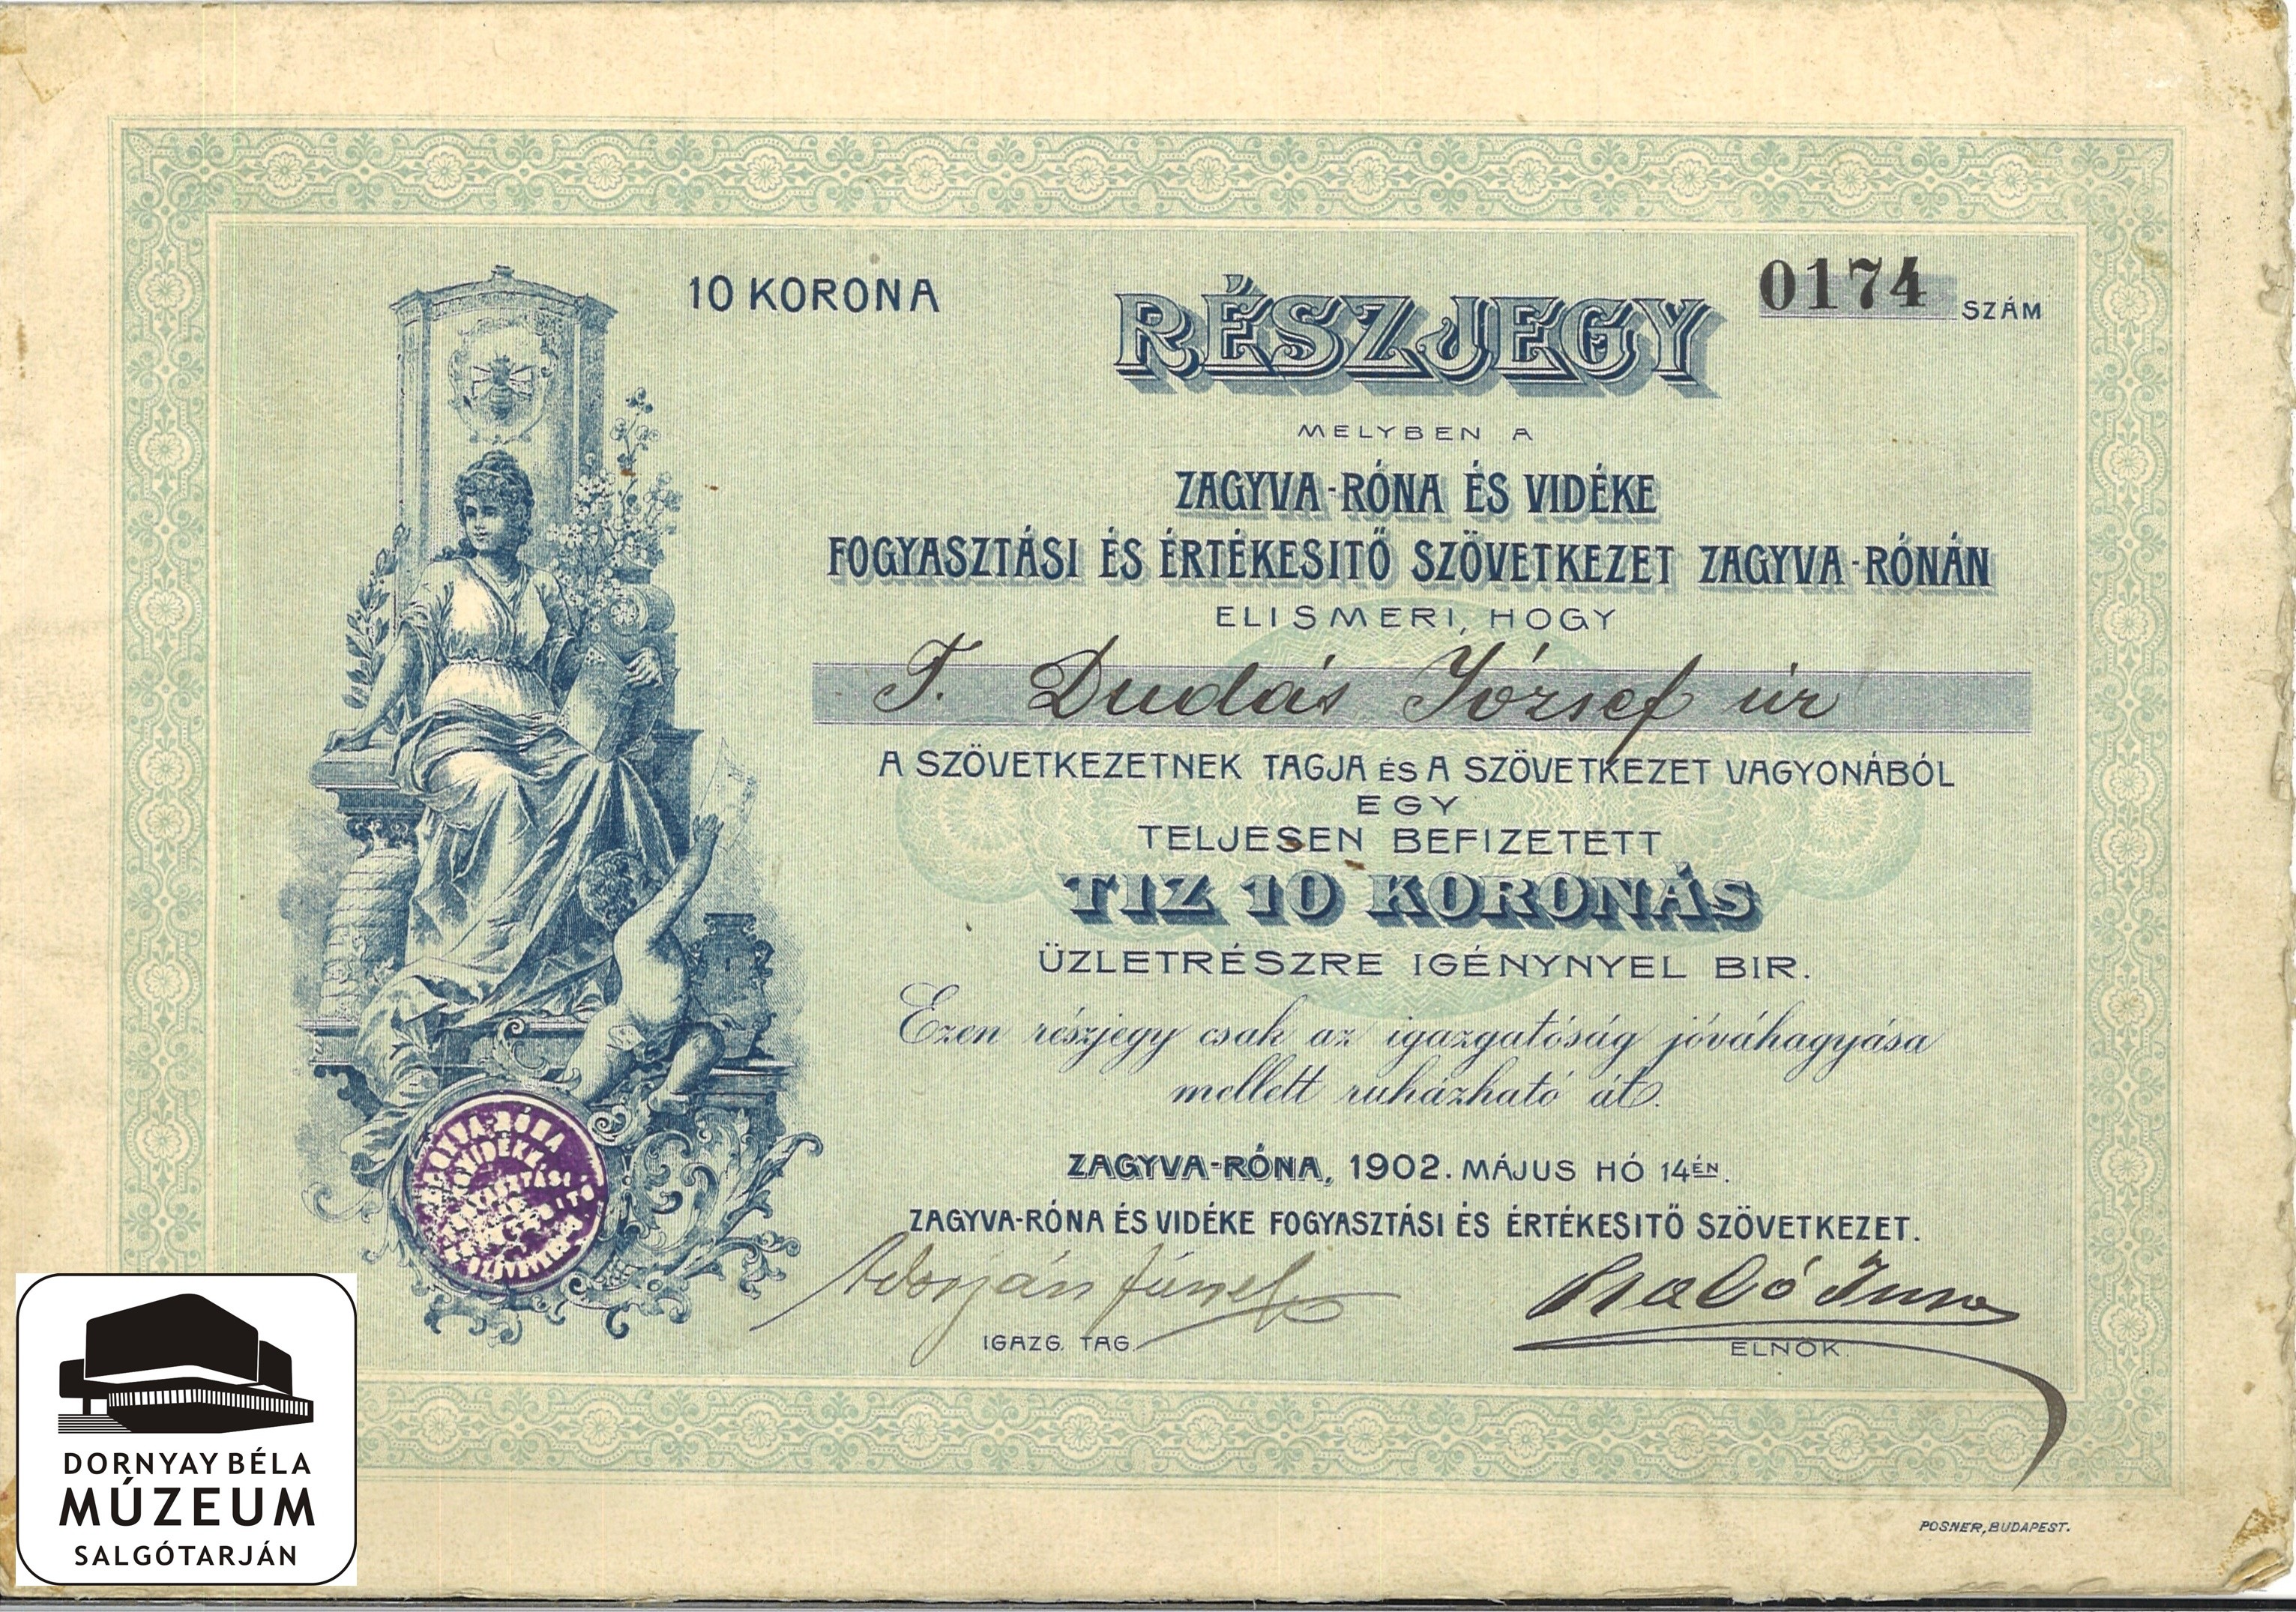 Dudás József Zagyvaróna és Vidéke Fogy. És Ért. Szöv. 10 koronás részvénye (Dornyay Béla Múzeum CC BY-NC-SA)